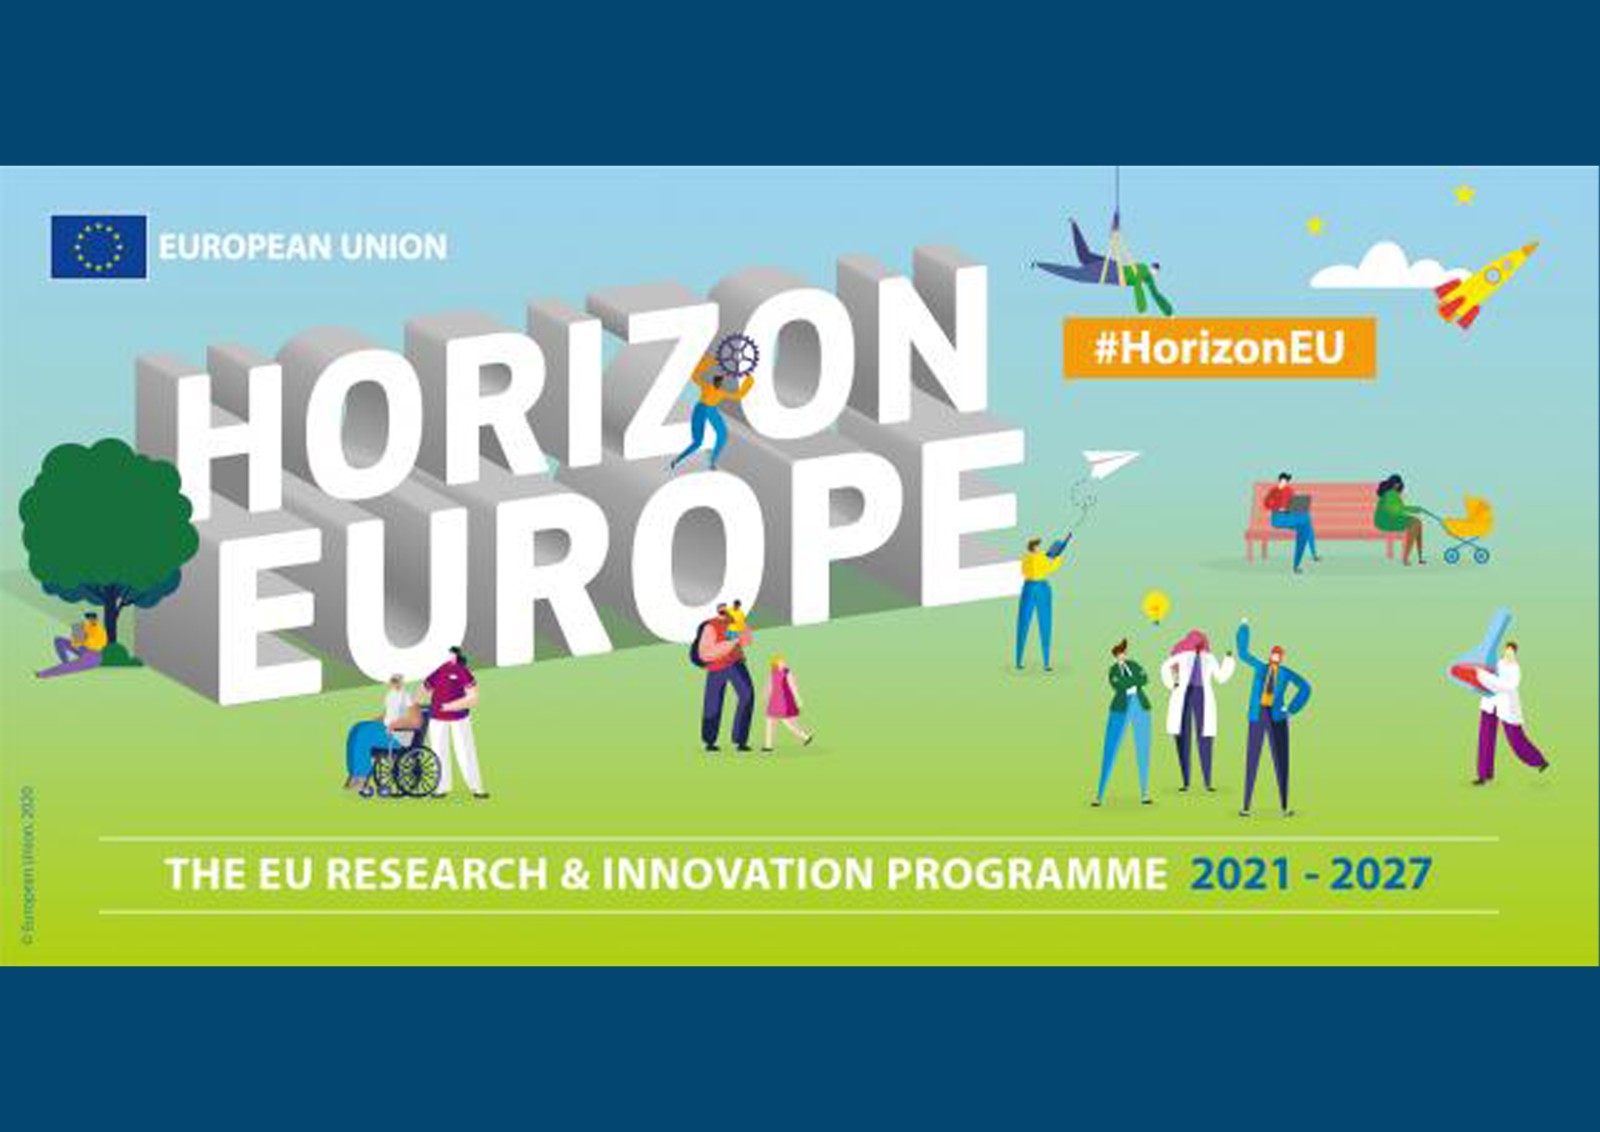 Ufuk Avrupa (Horizon Europe) Programı 2021 Yılı Çağrıları Açıldı!